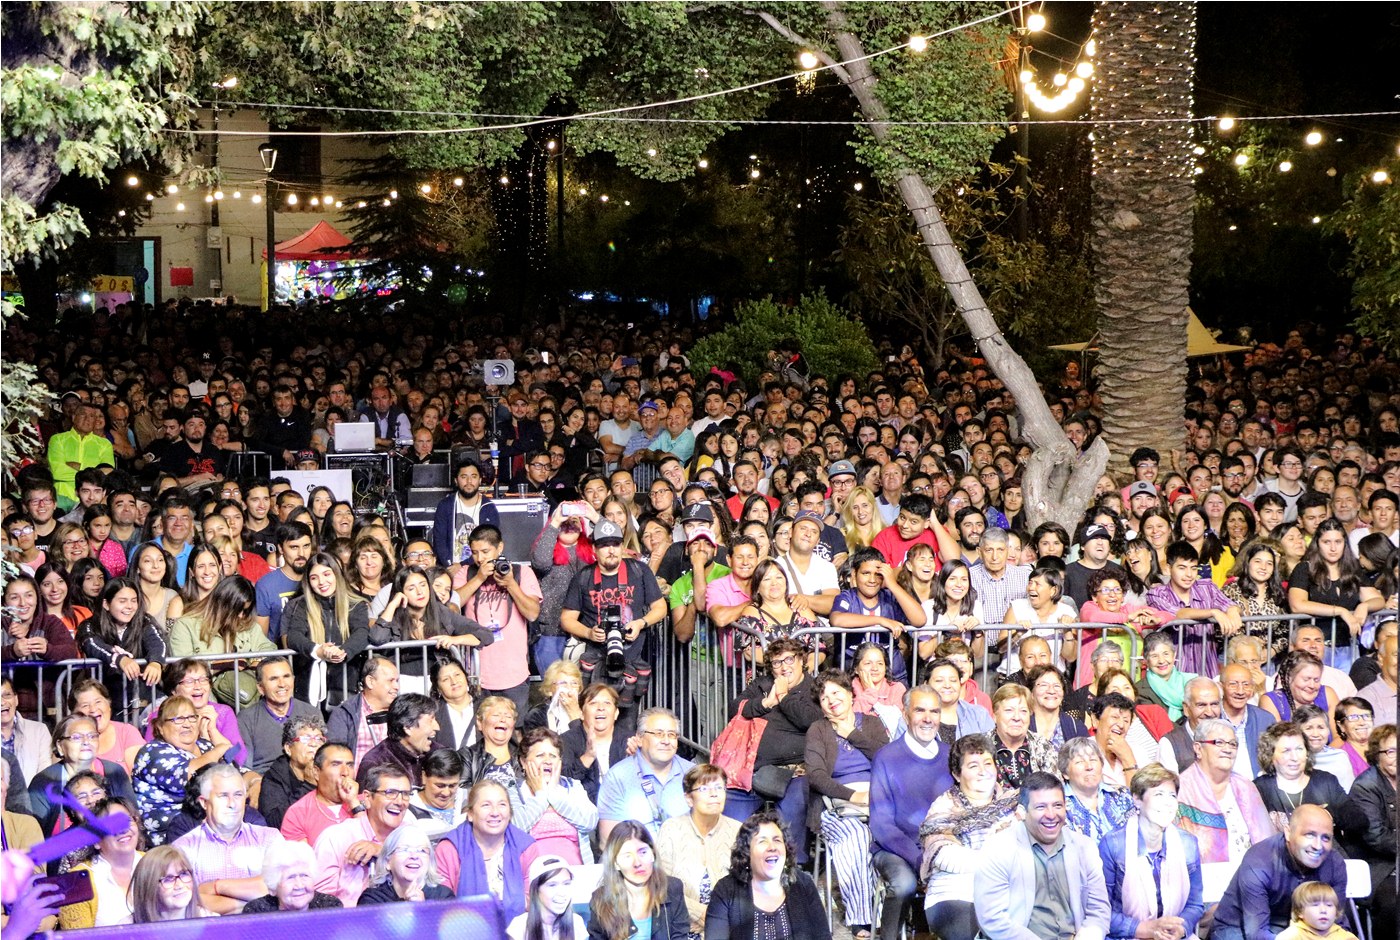 CULTURA: La Chaya de Putaendo superó todas las expectativas y se transformó en el evento más multitudinario del verano 2020 en Aconcagua